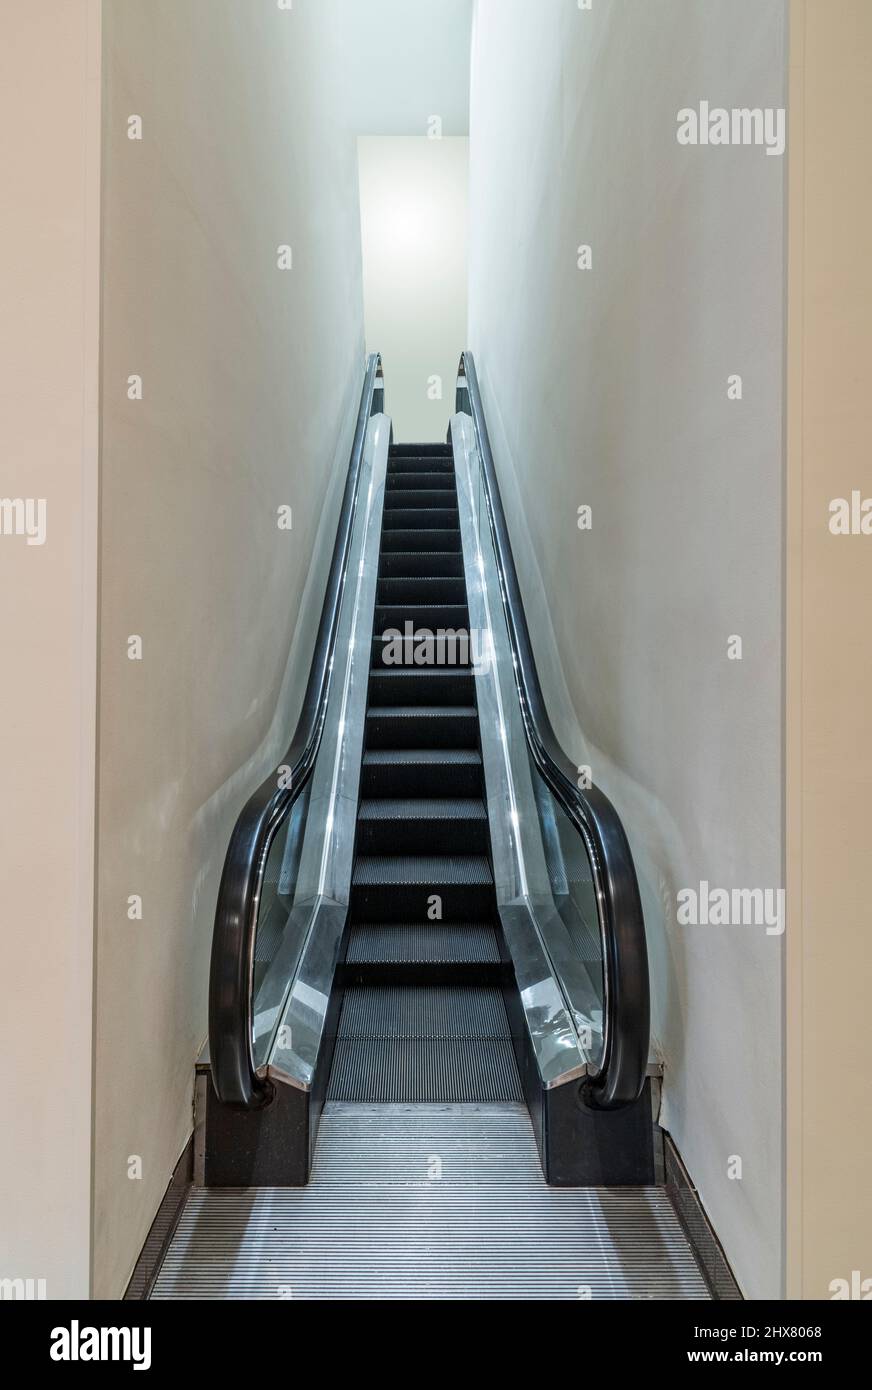 Single narrow escalator Stock Photo